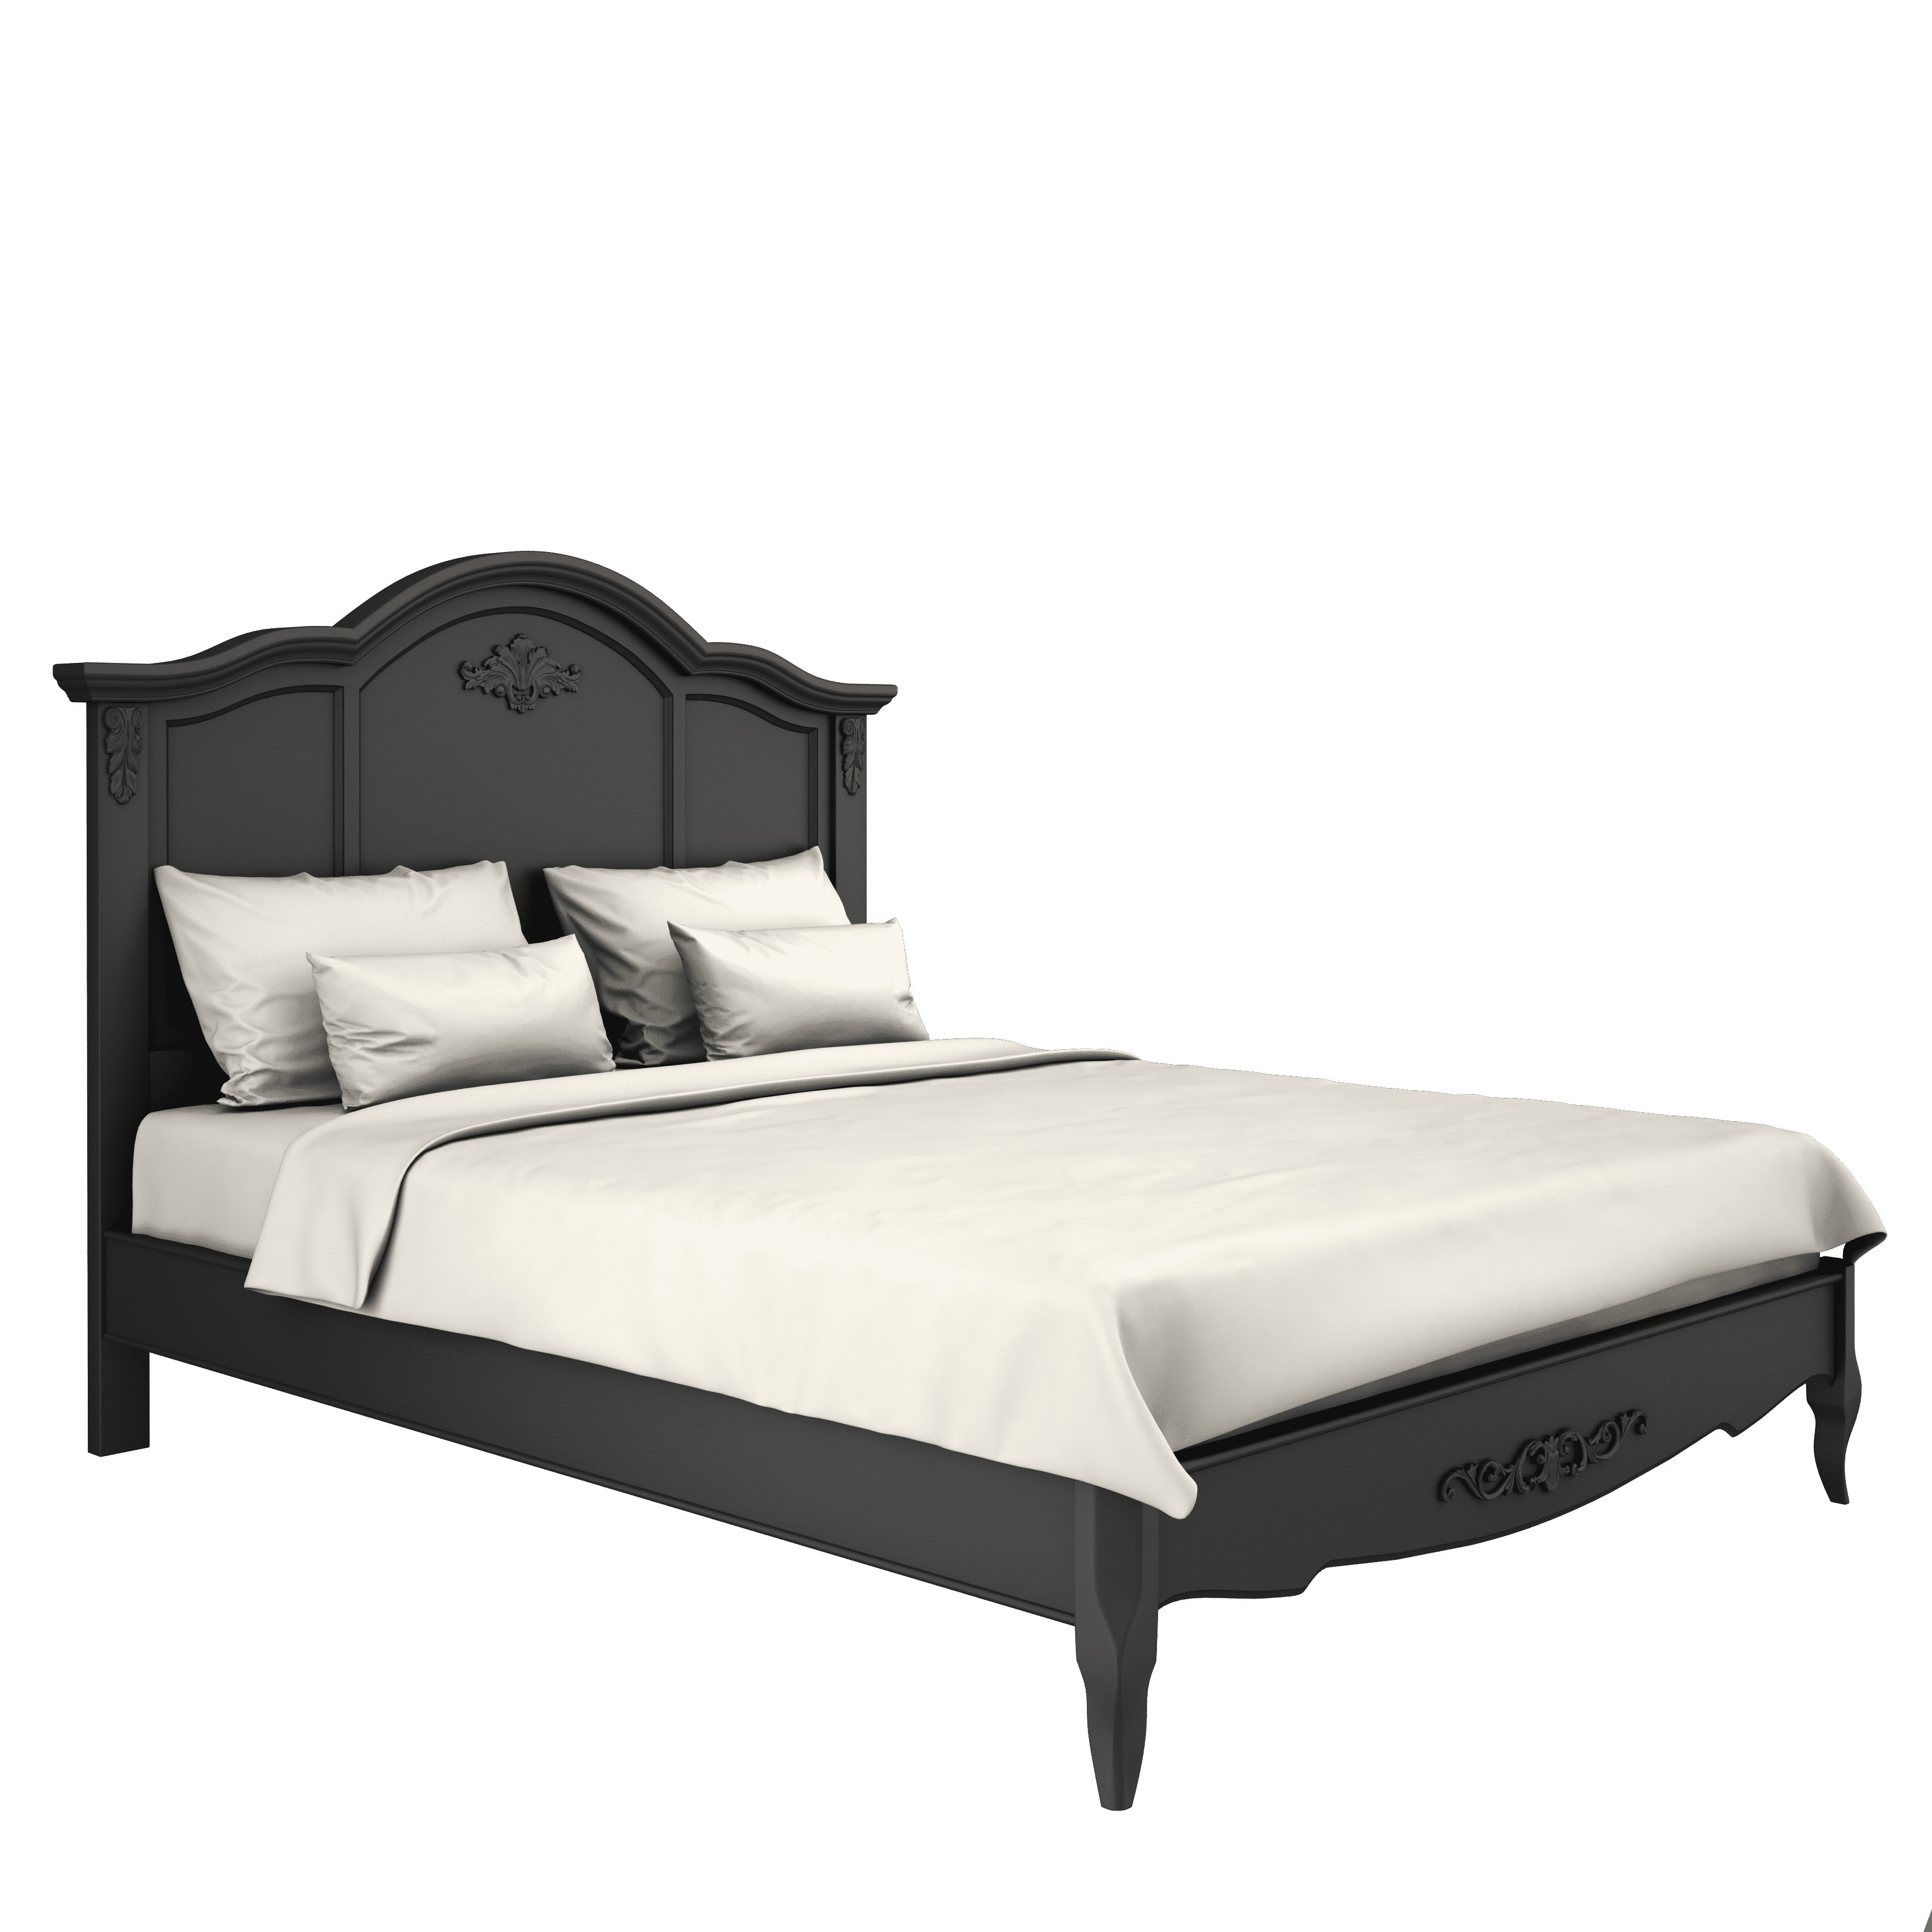 Кровать Marseille Night, односпальная, 120x200 см, цвет: черный (B202BL)B202BL